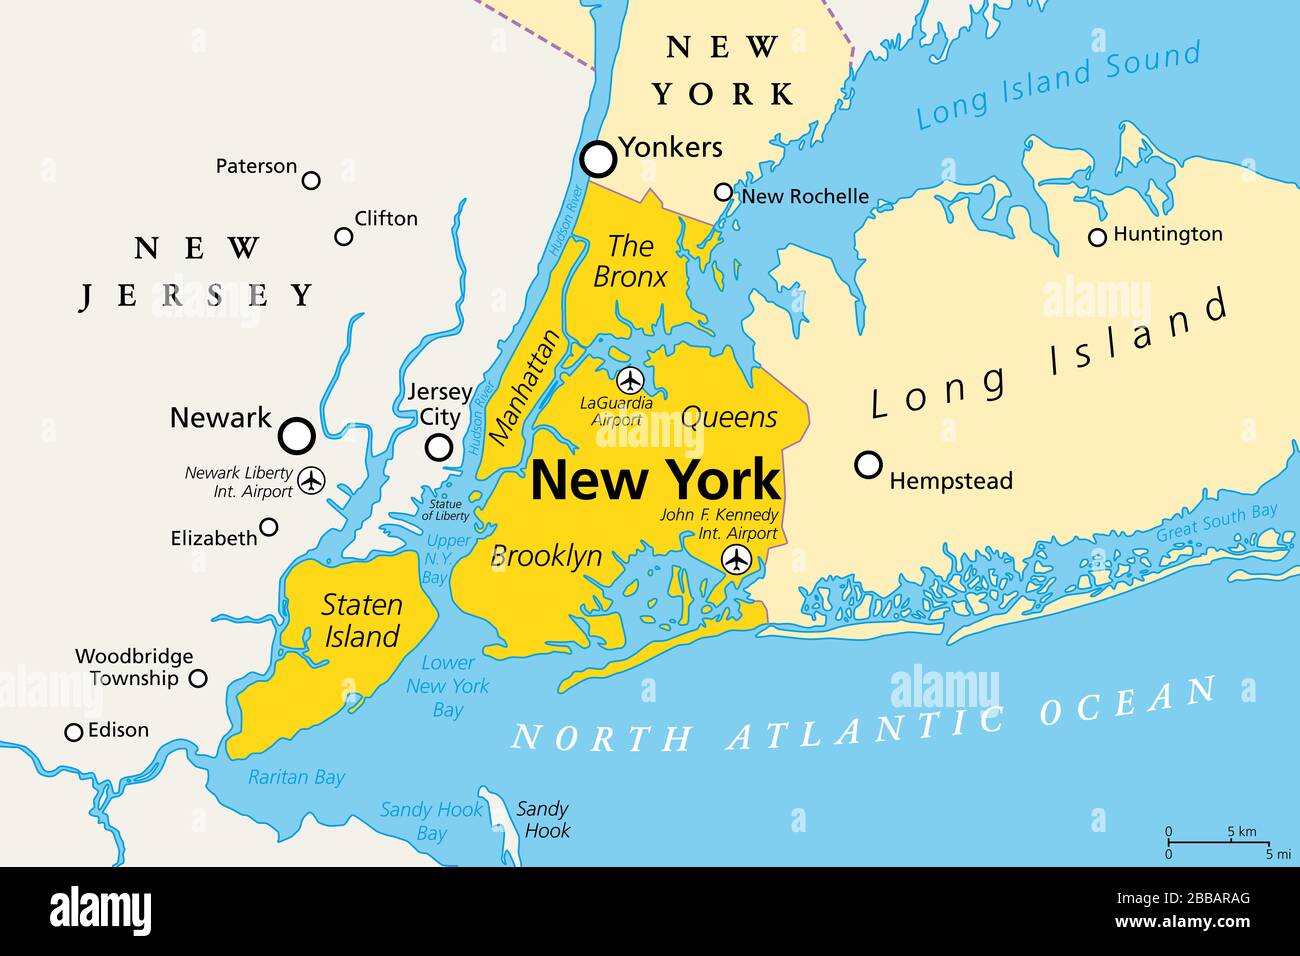 New York City, mappa politica. La città più popolosa degli Stati Uniti, si trova nello stato di New York. Manhattan, Bronx, Queens, Brooklyn, Staten Island. Foto Stock